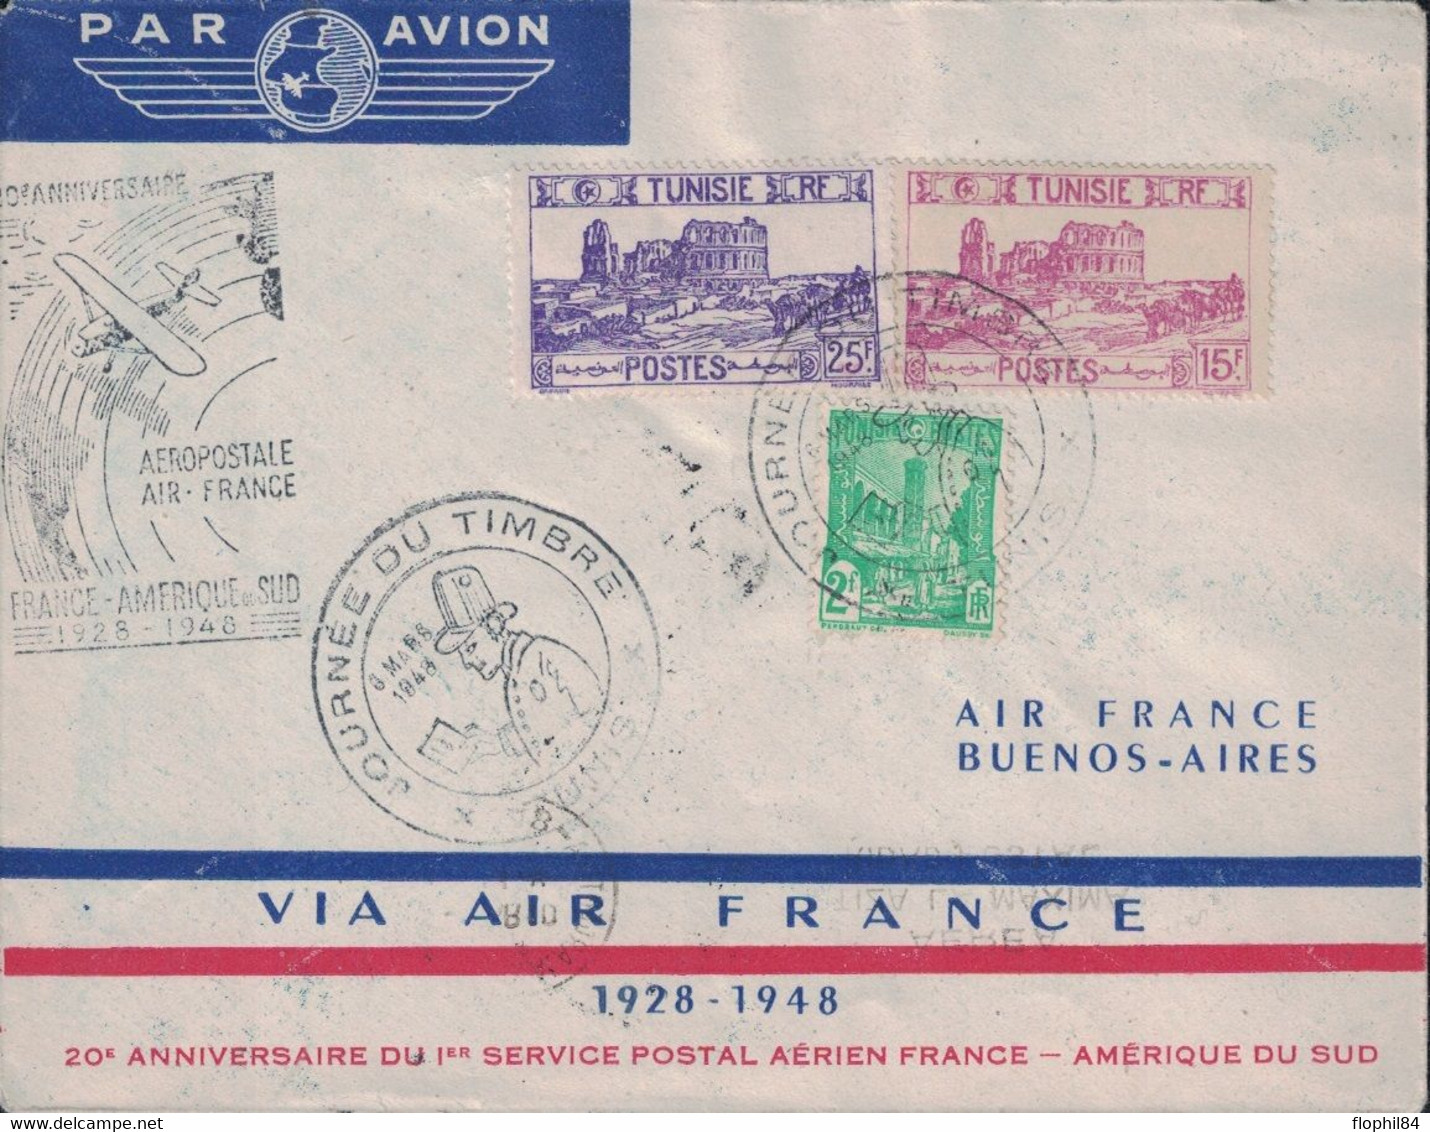 TUNISIE - TUNIS - ENVELOPPE AIR FRANCE - LIAISON FRANCE AMERIQUE DU SUD - 1929 EN 8 JOURS - 1948 EN 30 HEURES - CACHET S - Aéreo